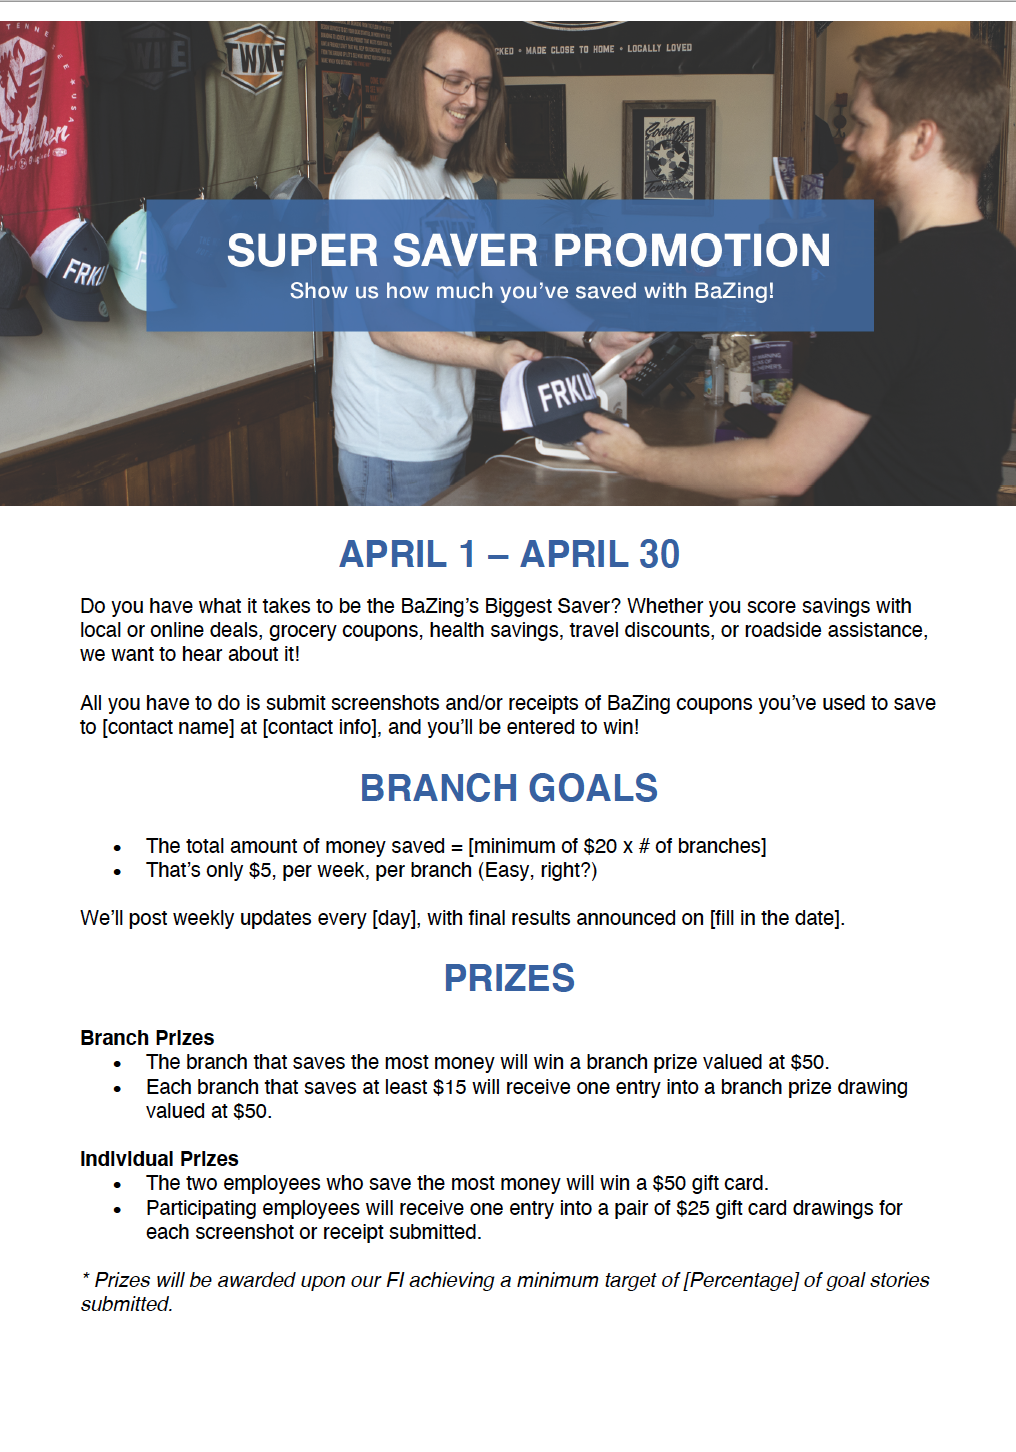 Super Saver Promotion